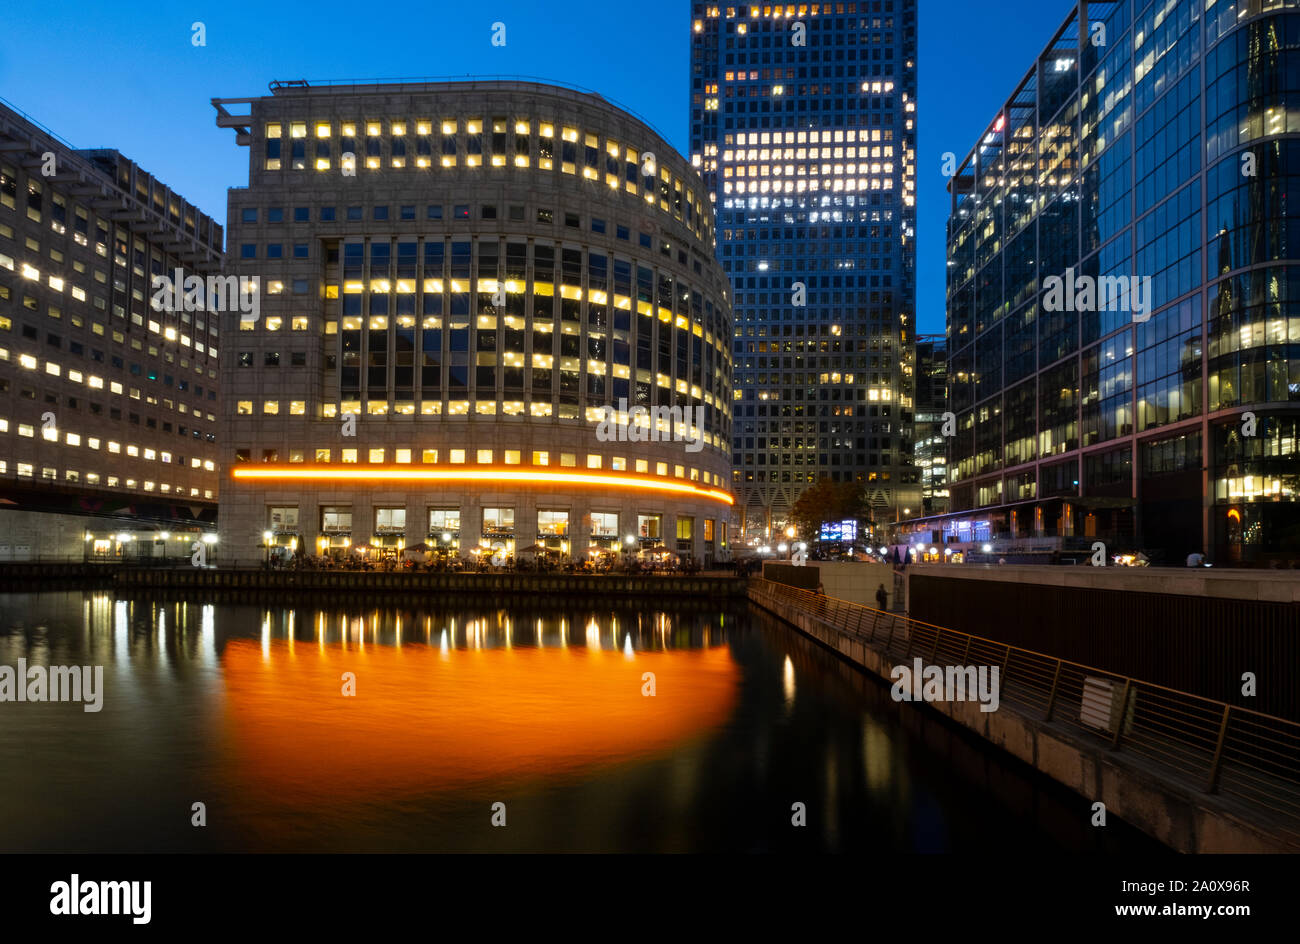 Canary Wharf, Londra, Regno Unito il 2 agosto 2019: Londra centro finanziario di Canary Wharf in serata Foto Stock